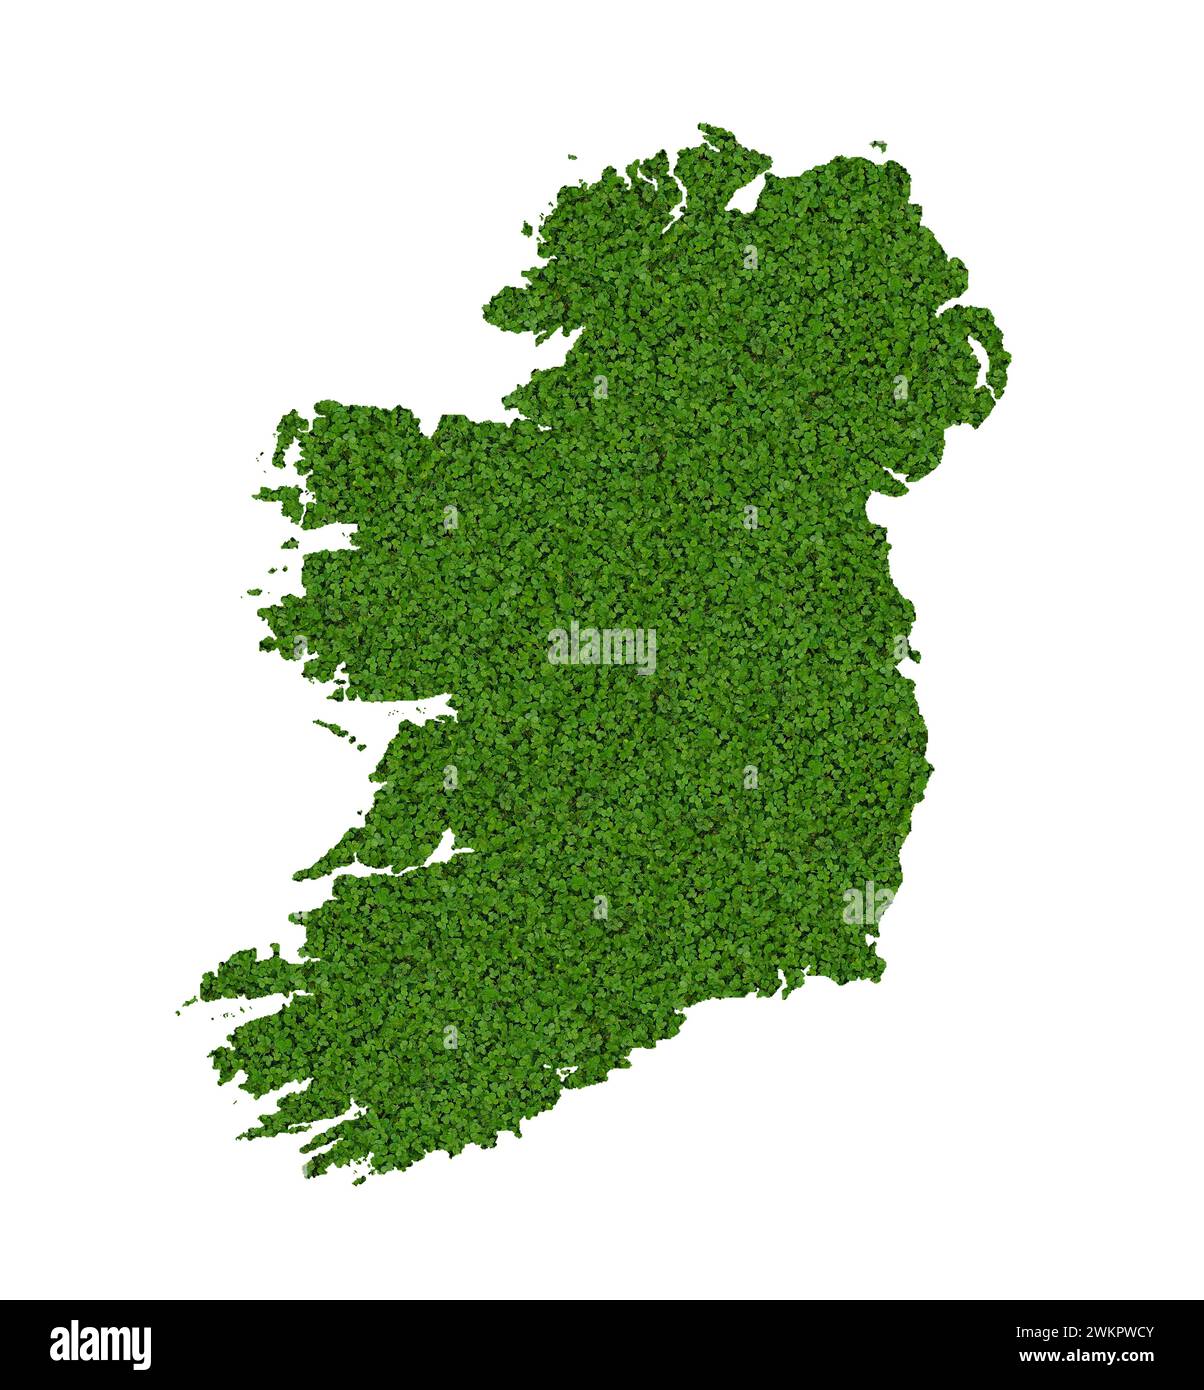 Landkarte, Umriss von Irland mit Klee gestaltet Stockfoto